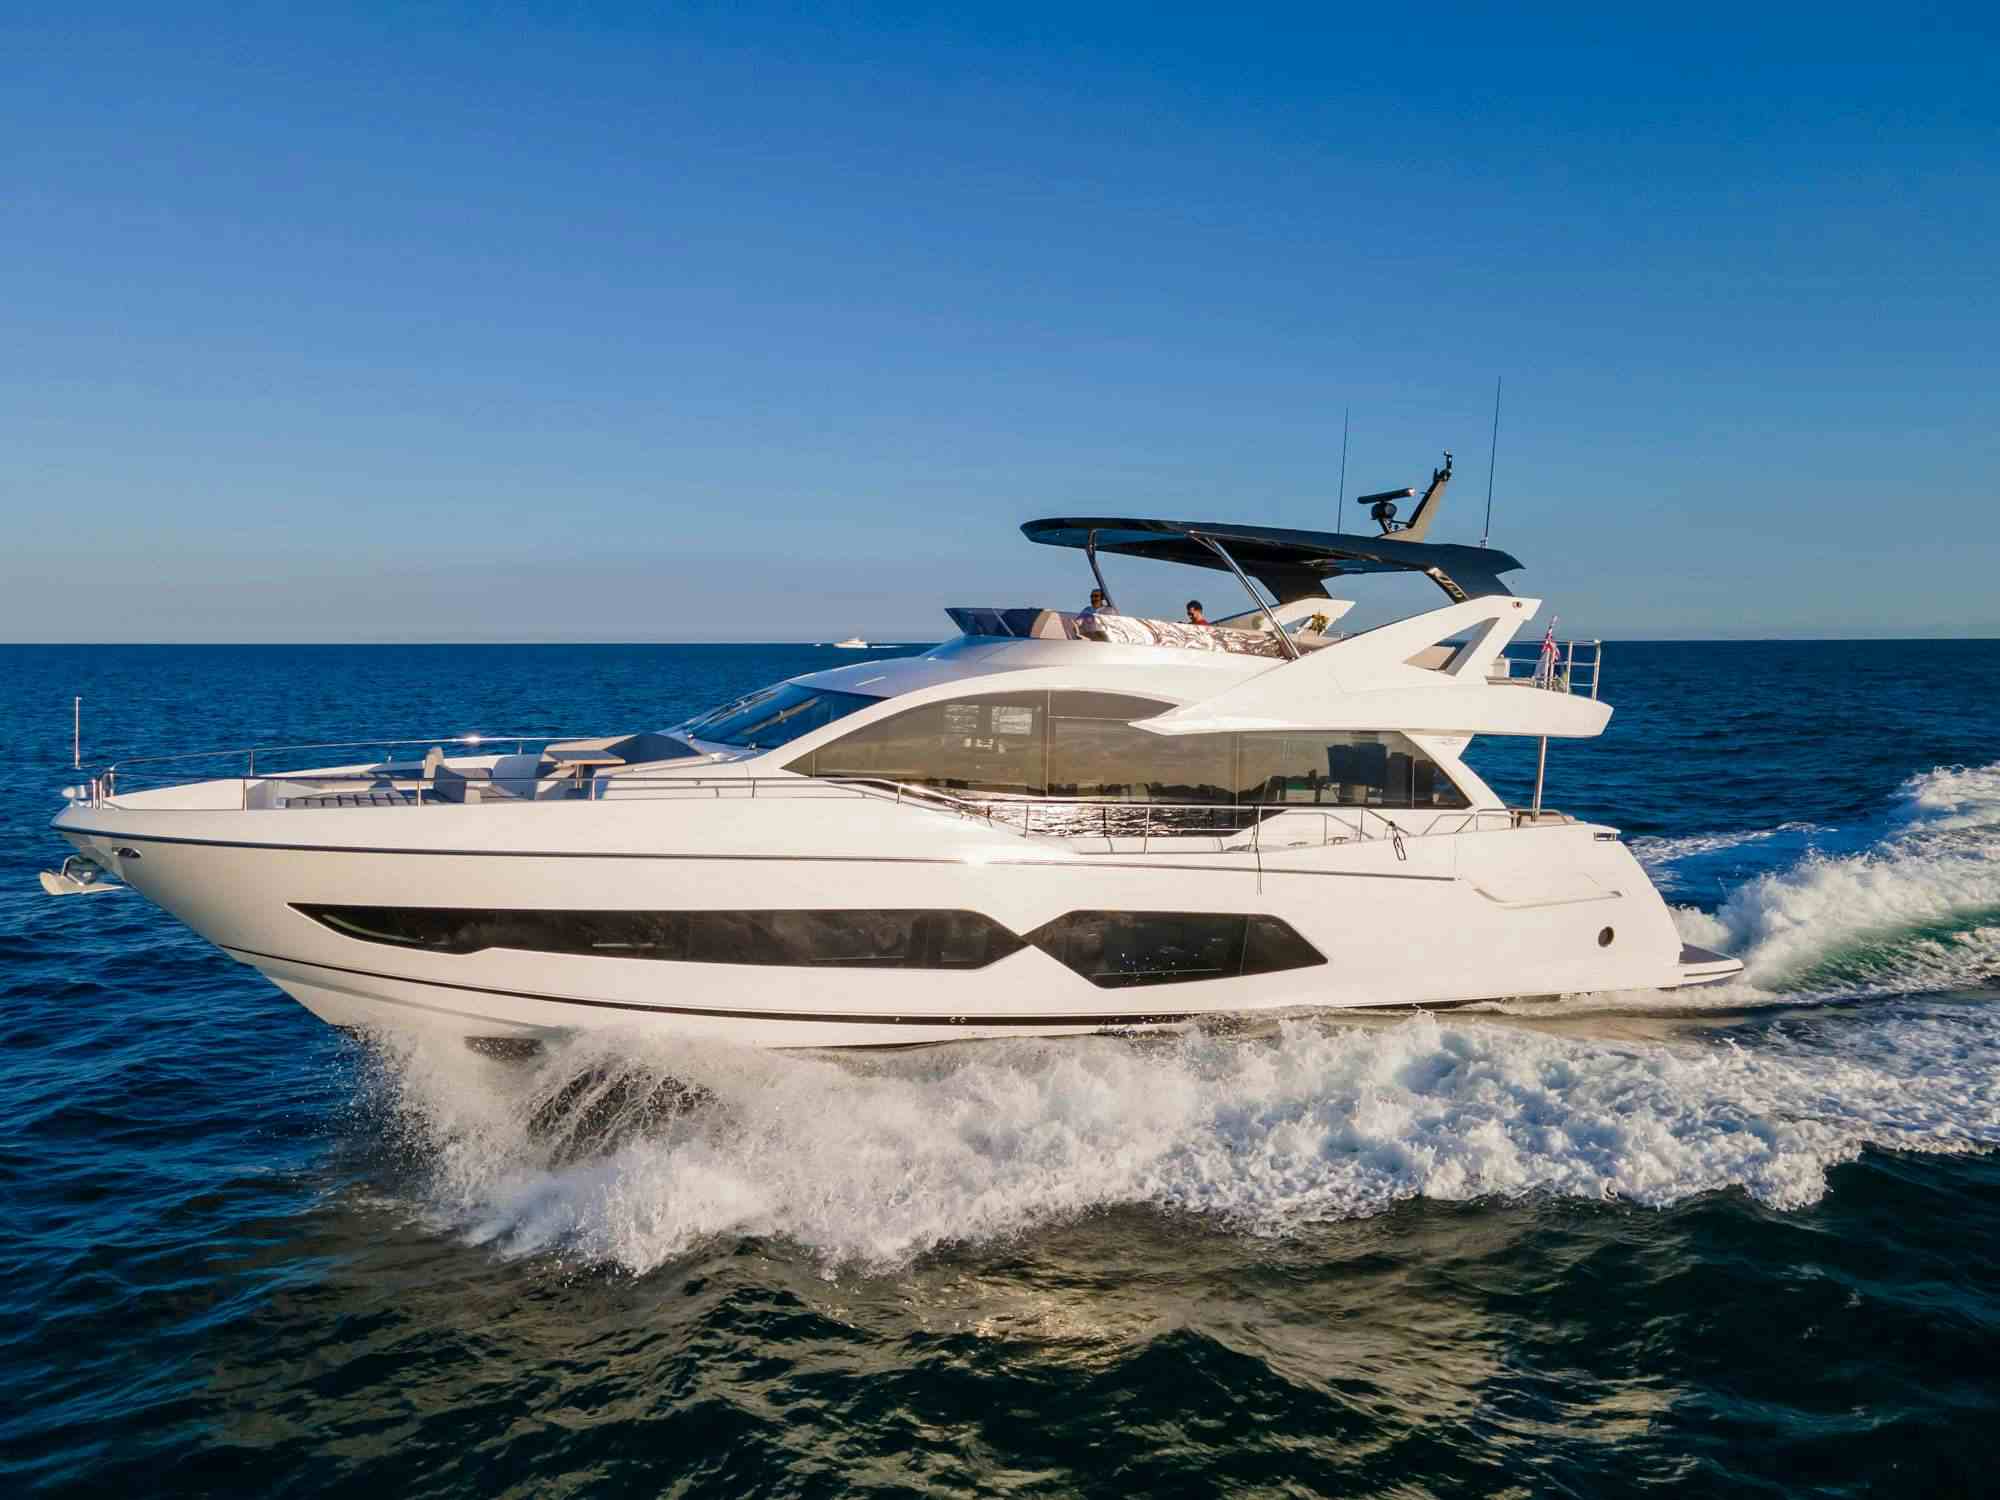 Milamo - Yacht Charter New England & Boat hire in US East Coast & Bahamas 1